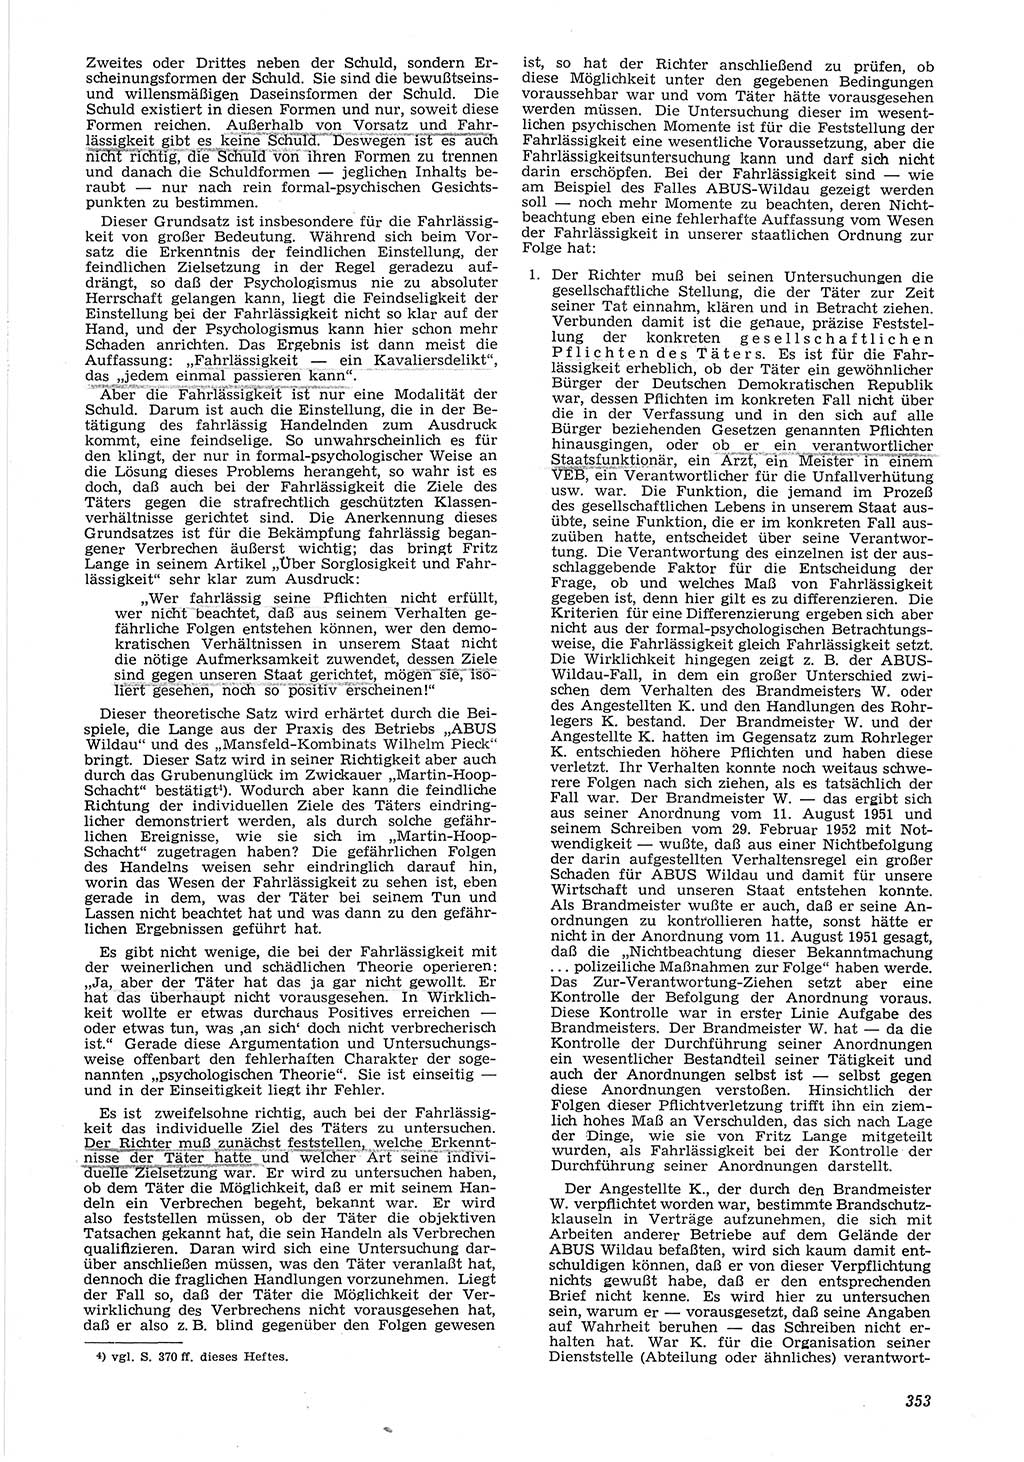 Neue Justiz (NJ), Zeitschrift für Recht und Rechtswissenschaft [Deutsche Demokratische Republik (DDR)], 6. Jahrgang 1952, Seite 353 (NJ DDR 1952, S. 353)